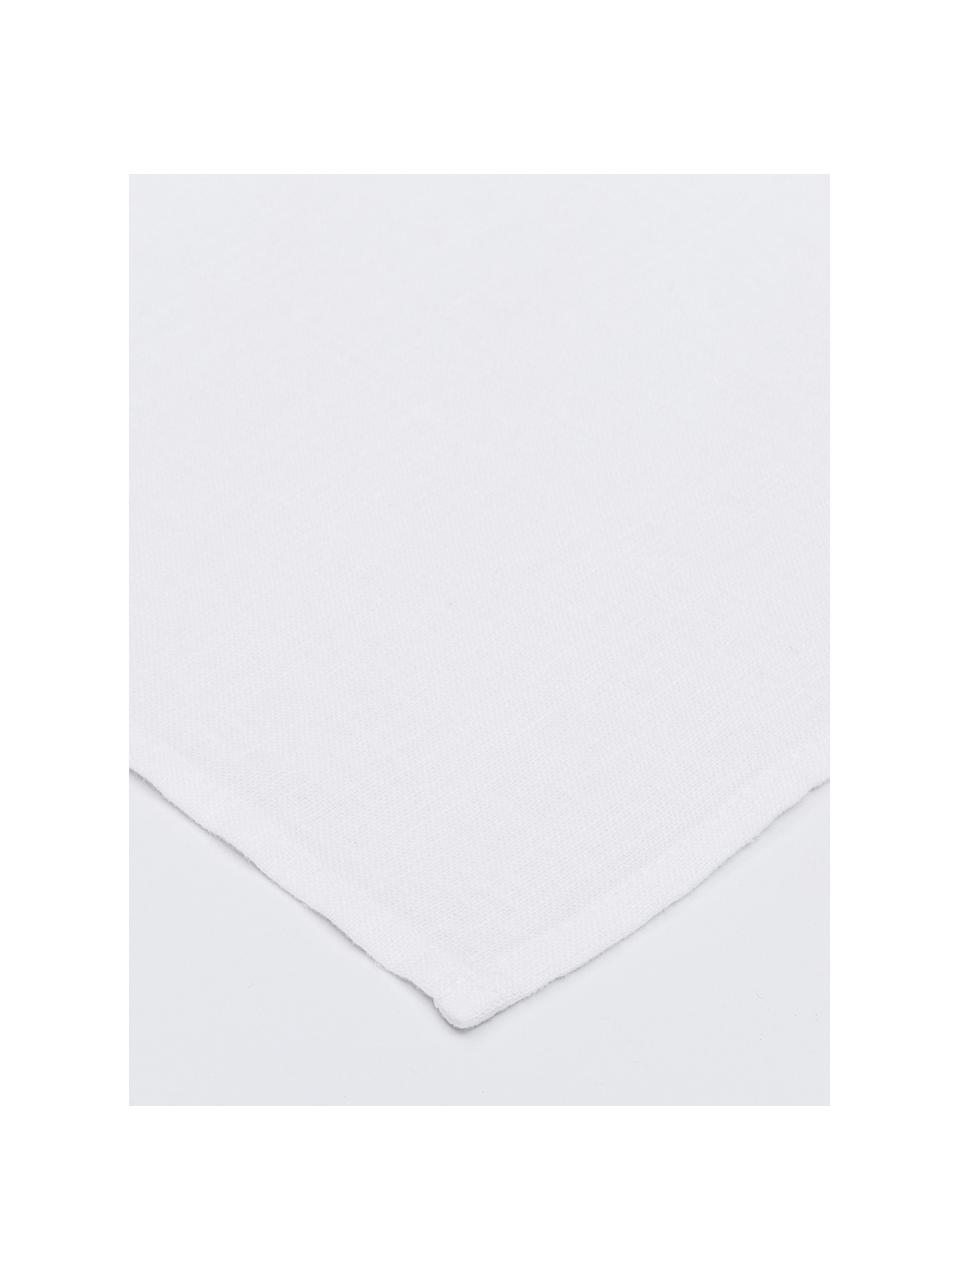 Leinen-Geschirrtuch Ruta in Weiß, Schneeweiß, B 45 x L 70 cm